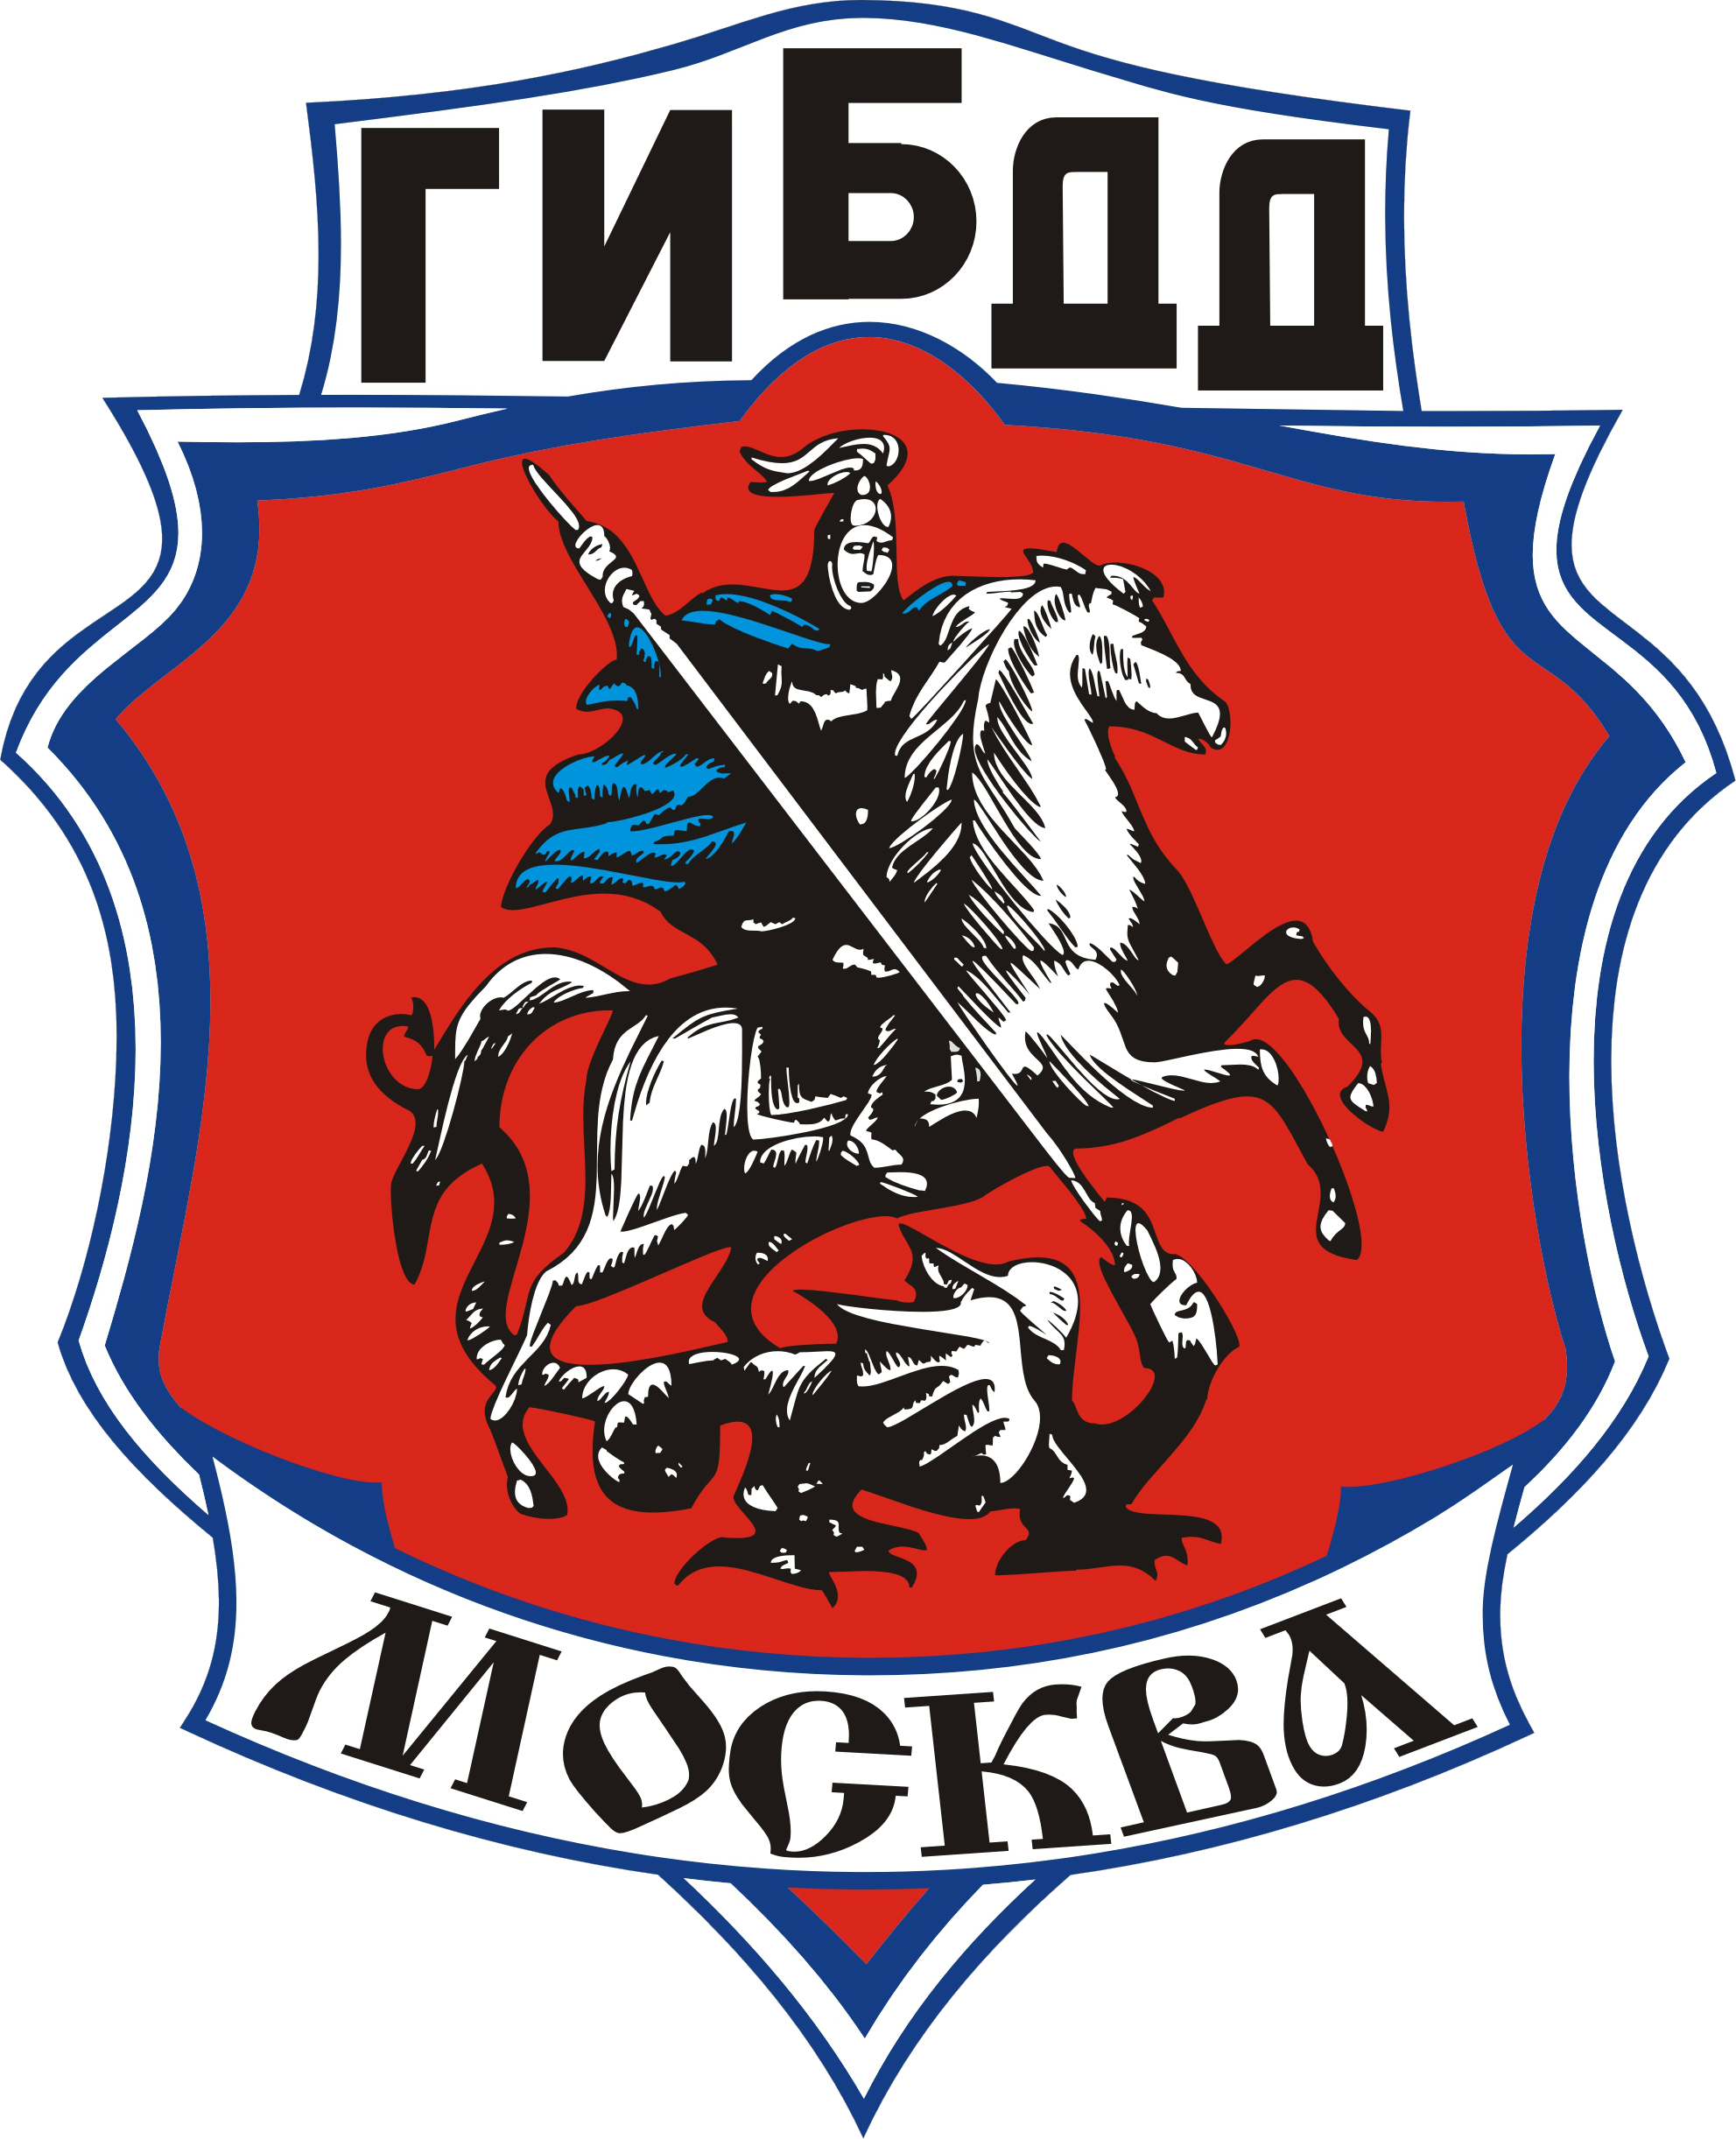 ГИБДД Москвы